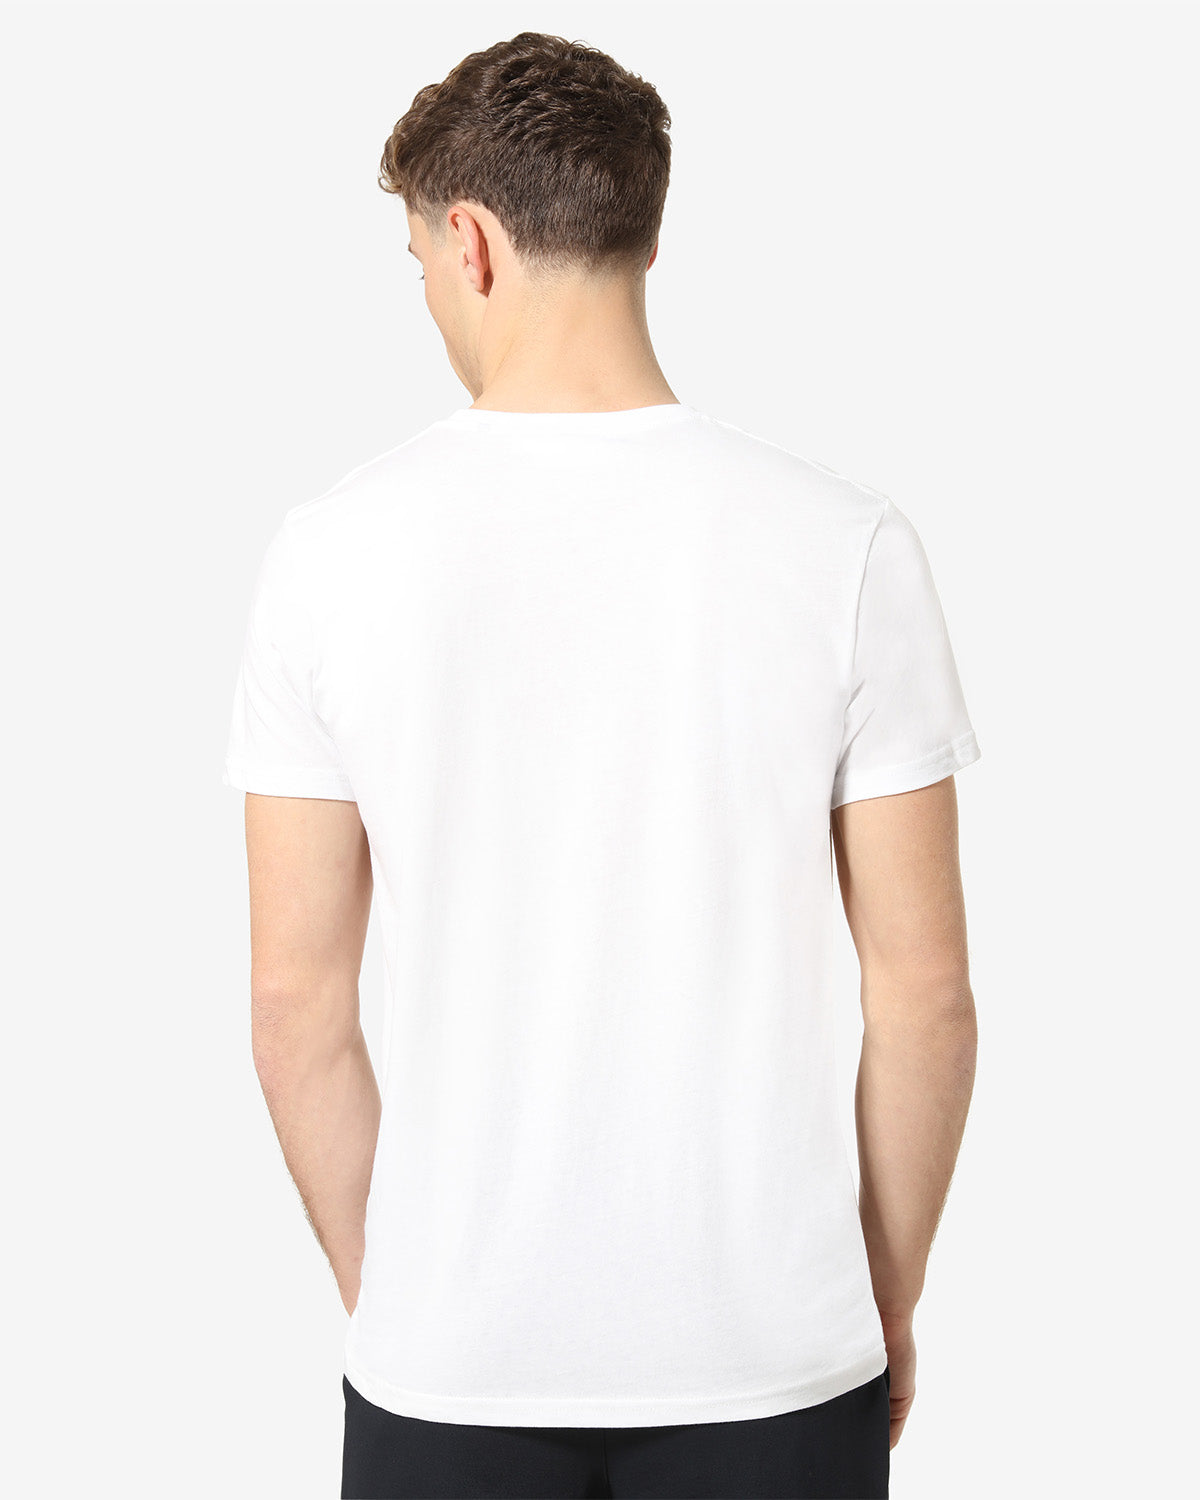 Basic T-shirt: Australian Sportswear